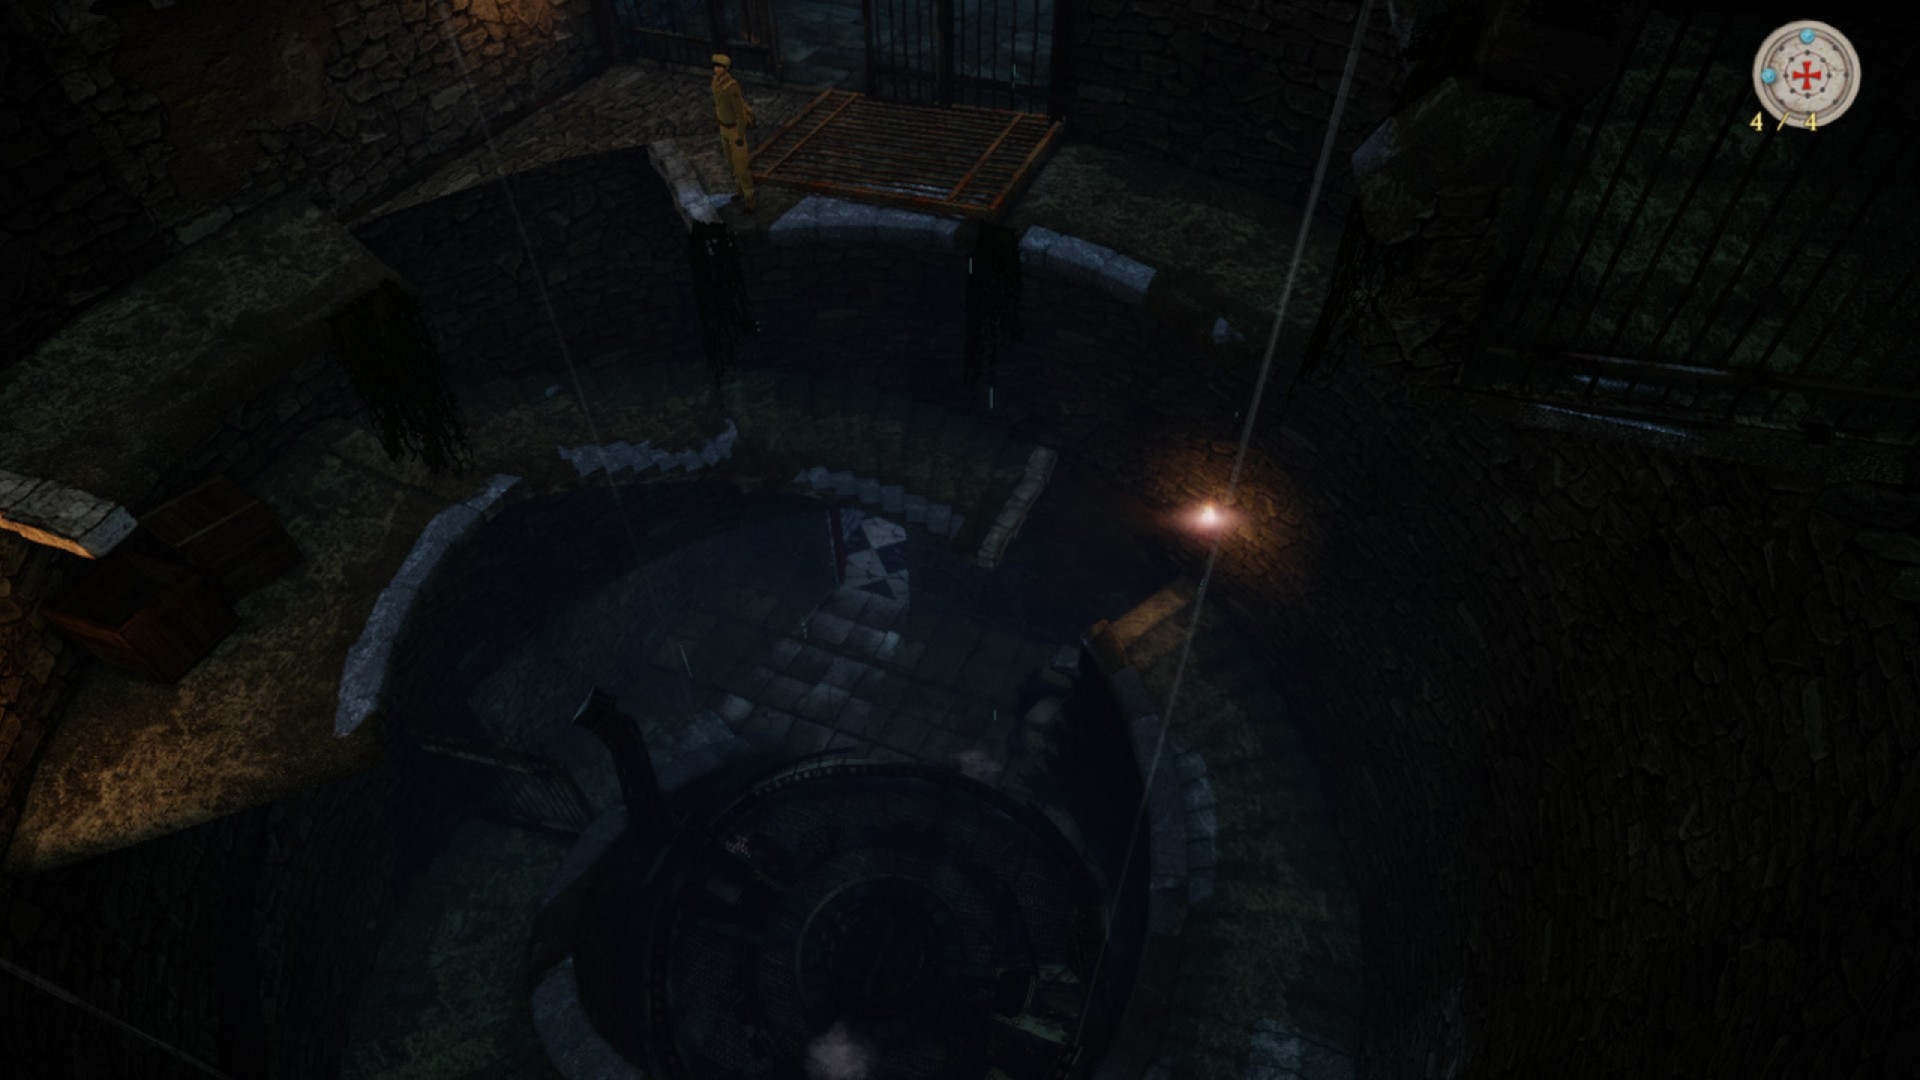 Скриншот из игры Adam